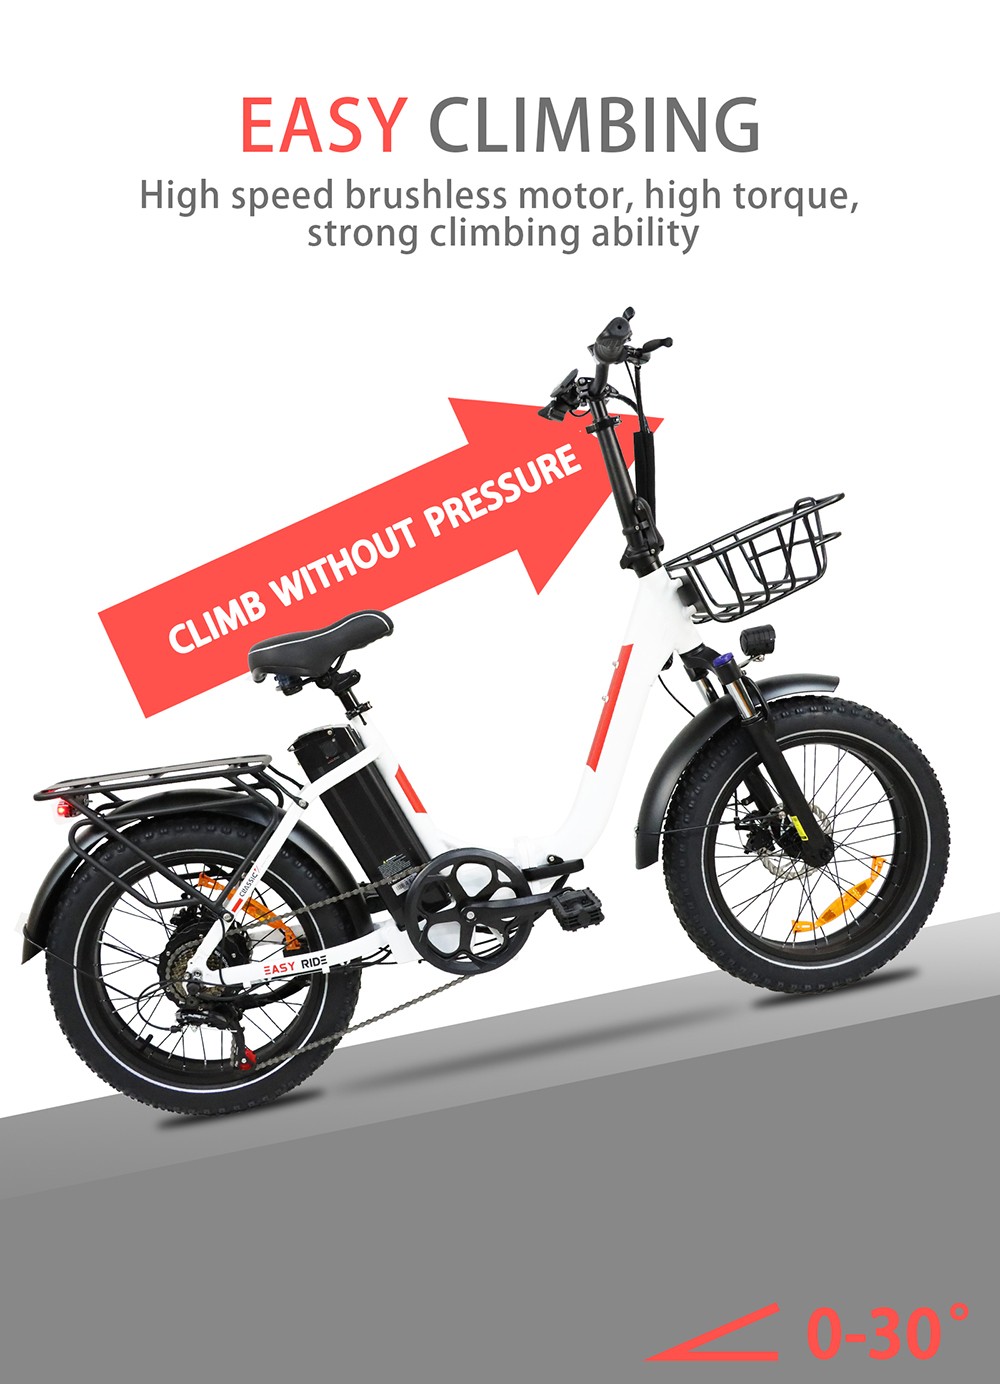 BAOLUJIE DZ2030 elektromos kerékpár, 20 * 4.0 hüvelykes gumi 500 W-os motor 48 V 13 Ah cserélhető akkumulátor 40 km/h Max sebesség 35-45 km Hatótávolság SHIMANO 7 sebességes - szürke